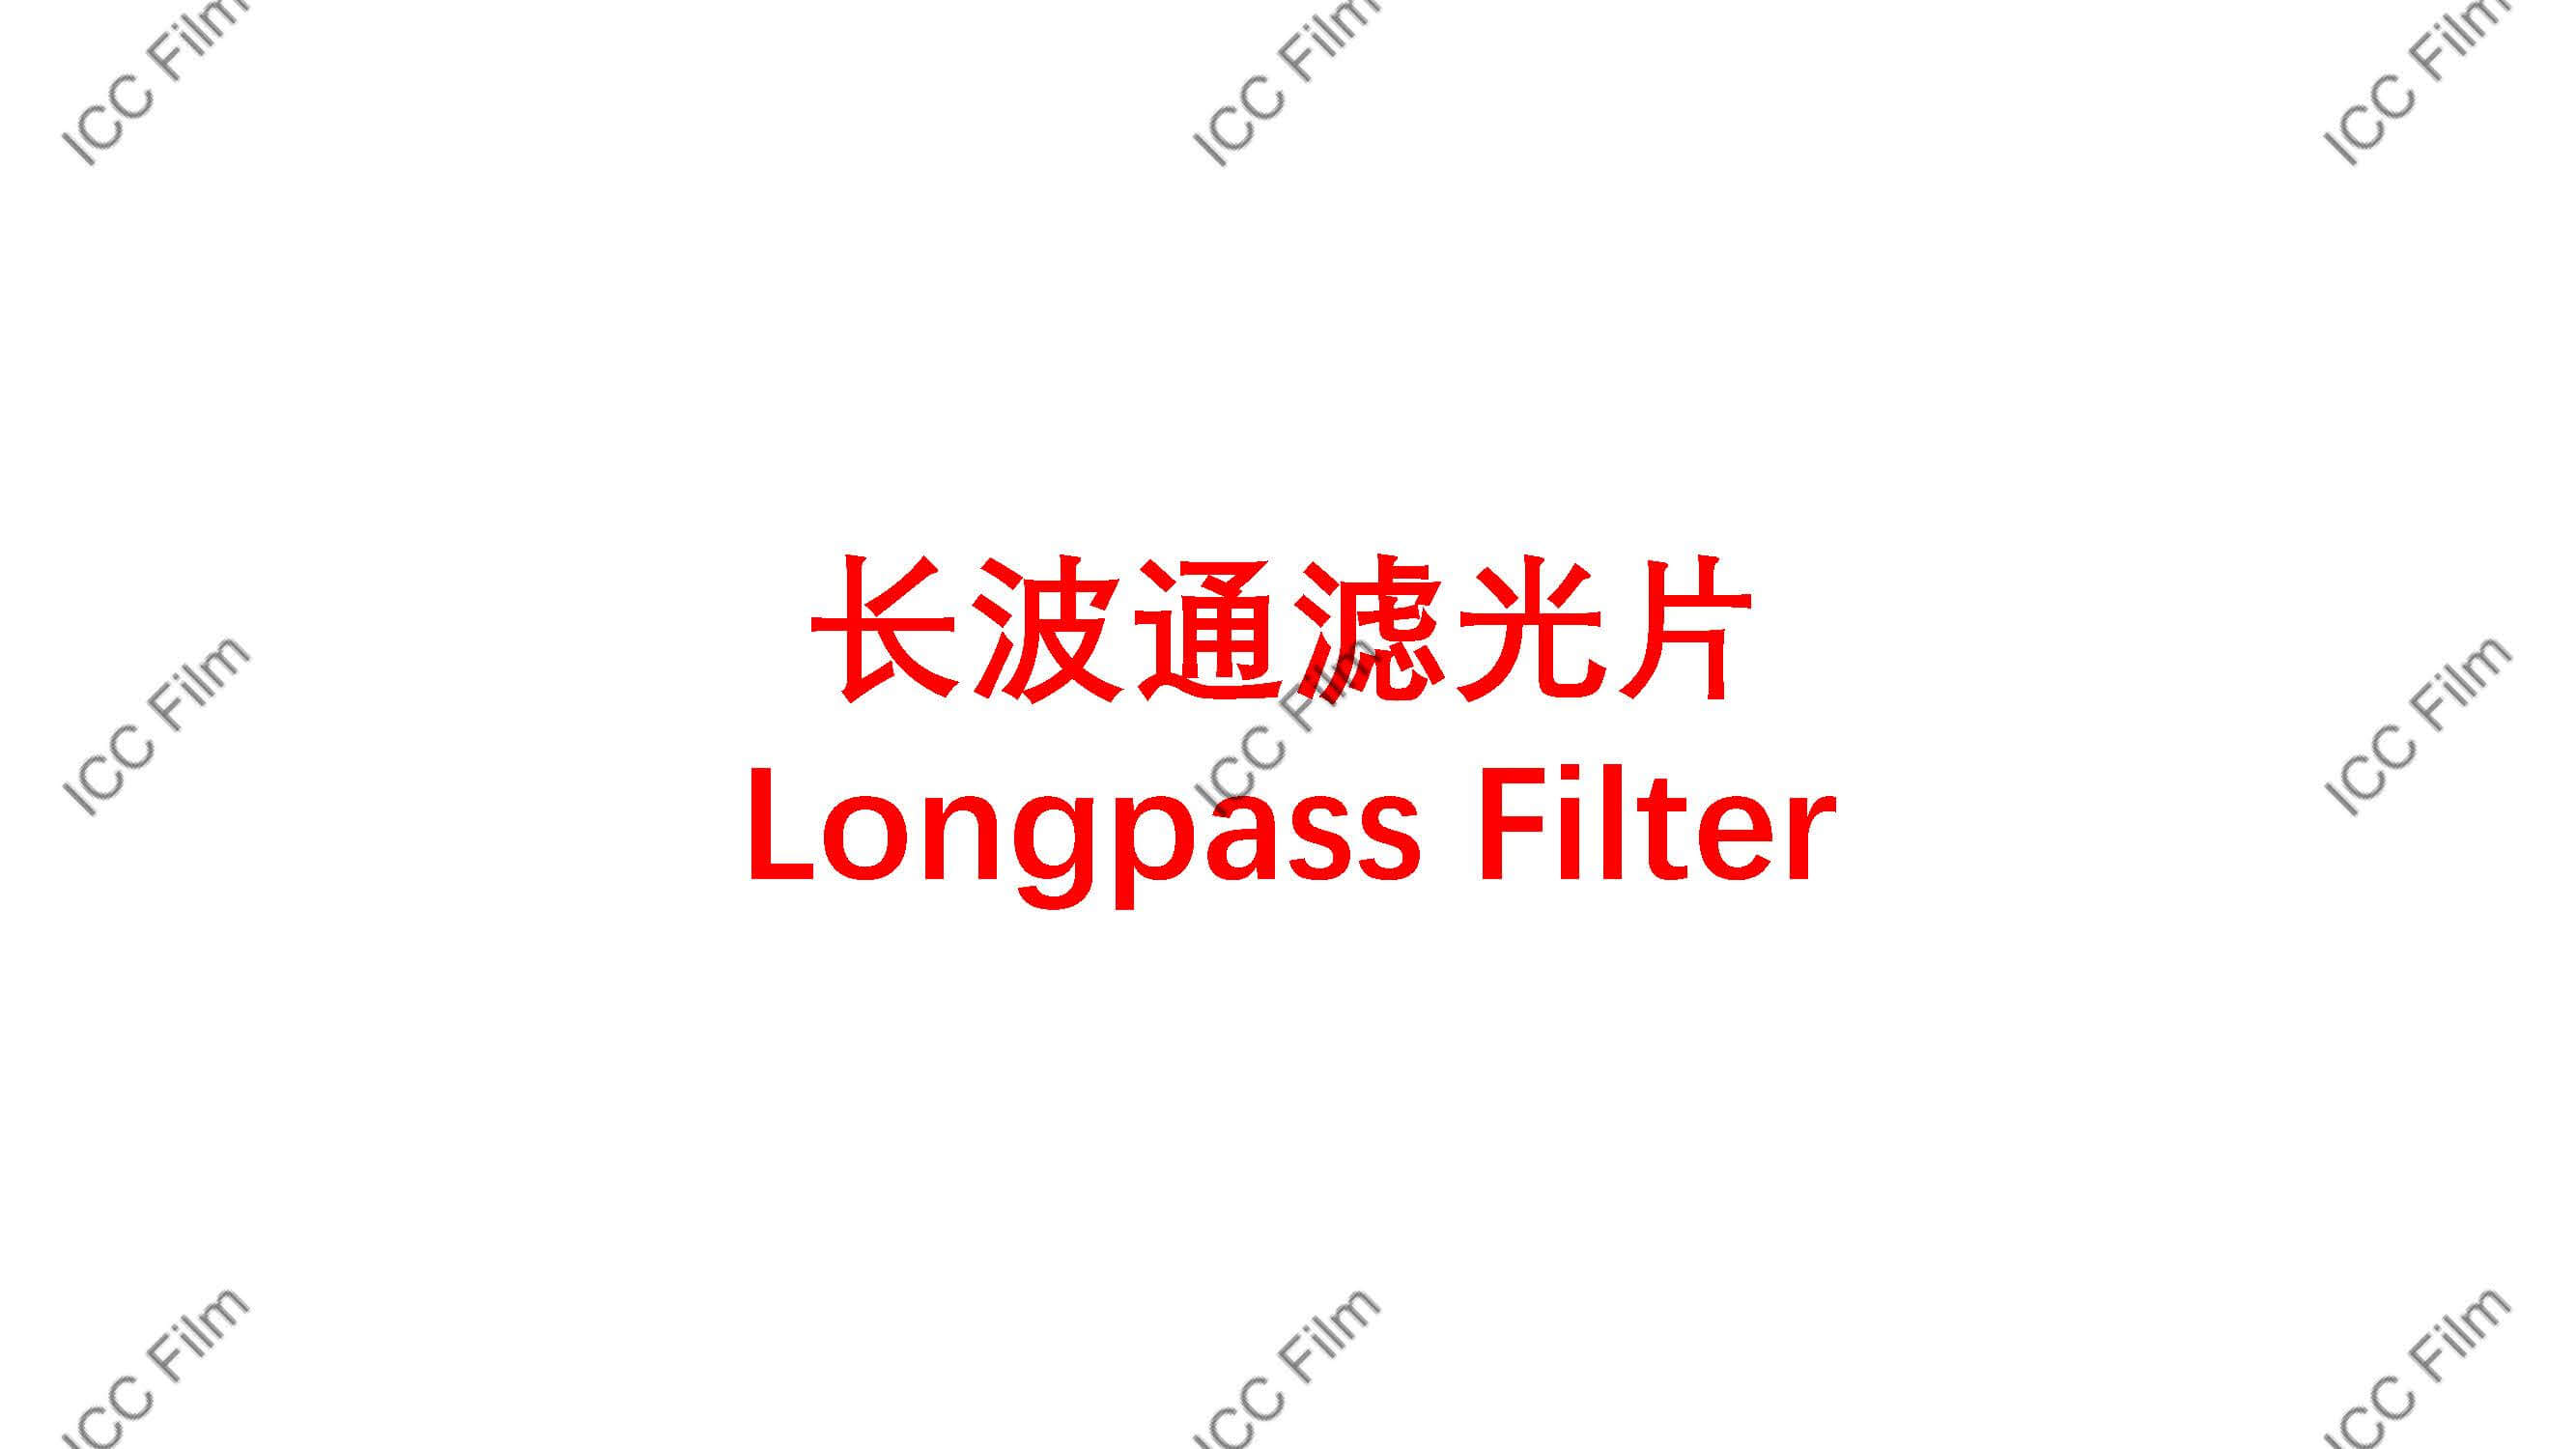 Longpass Filter